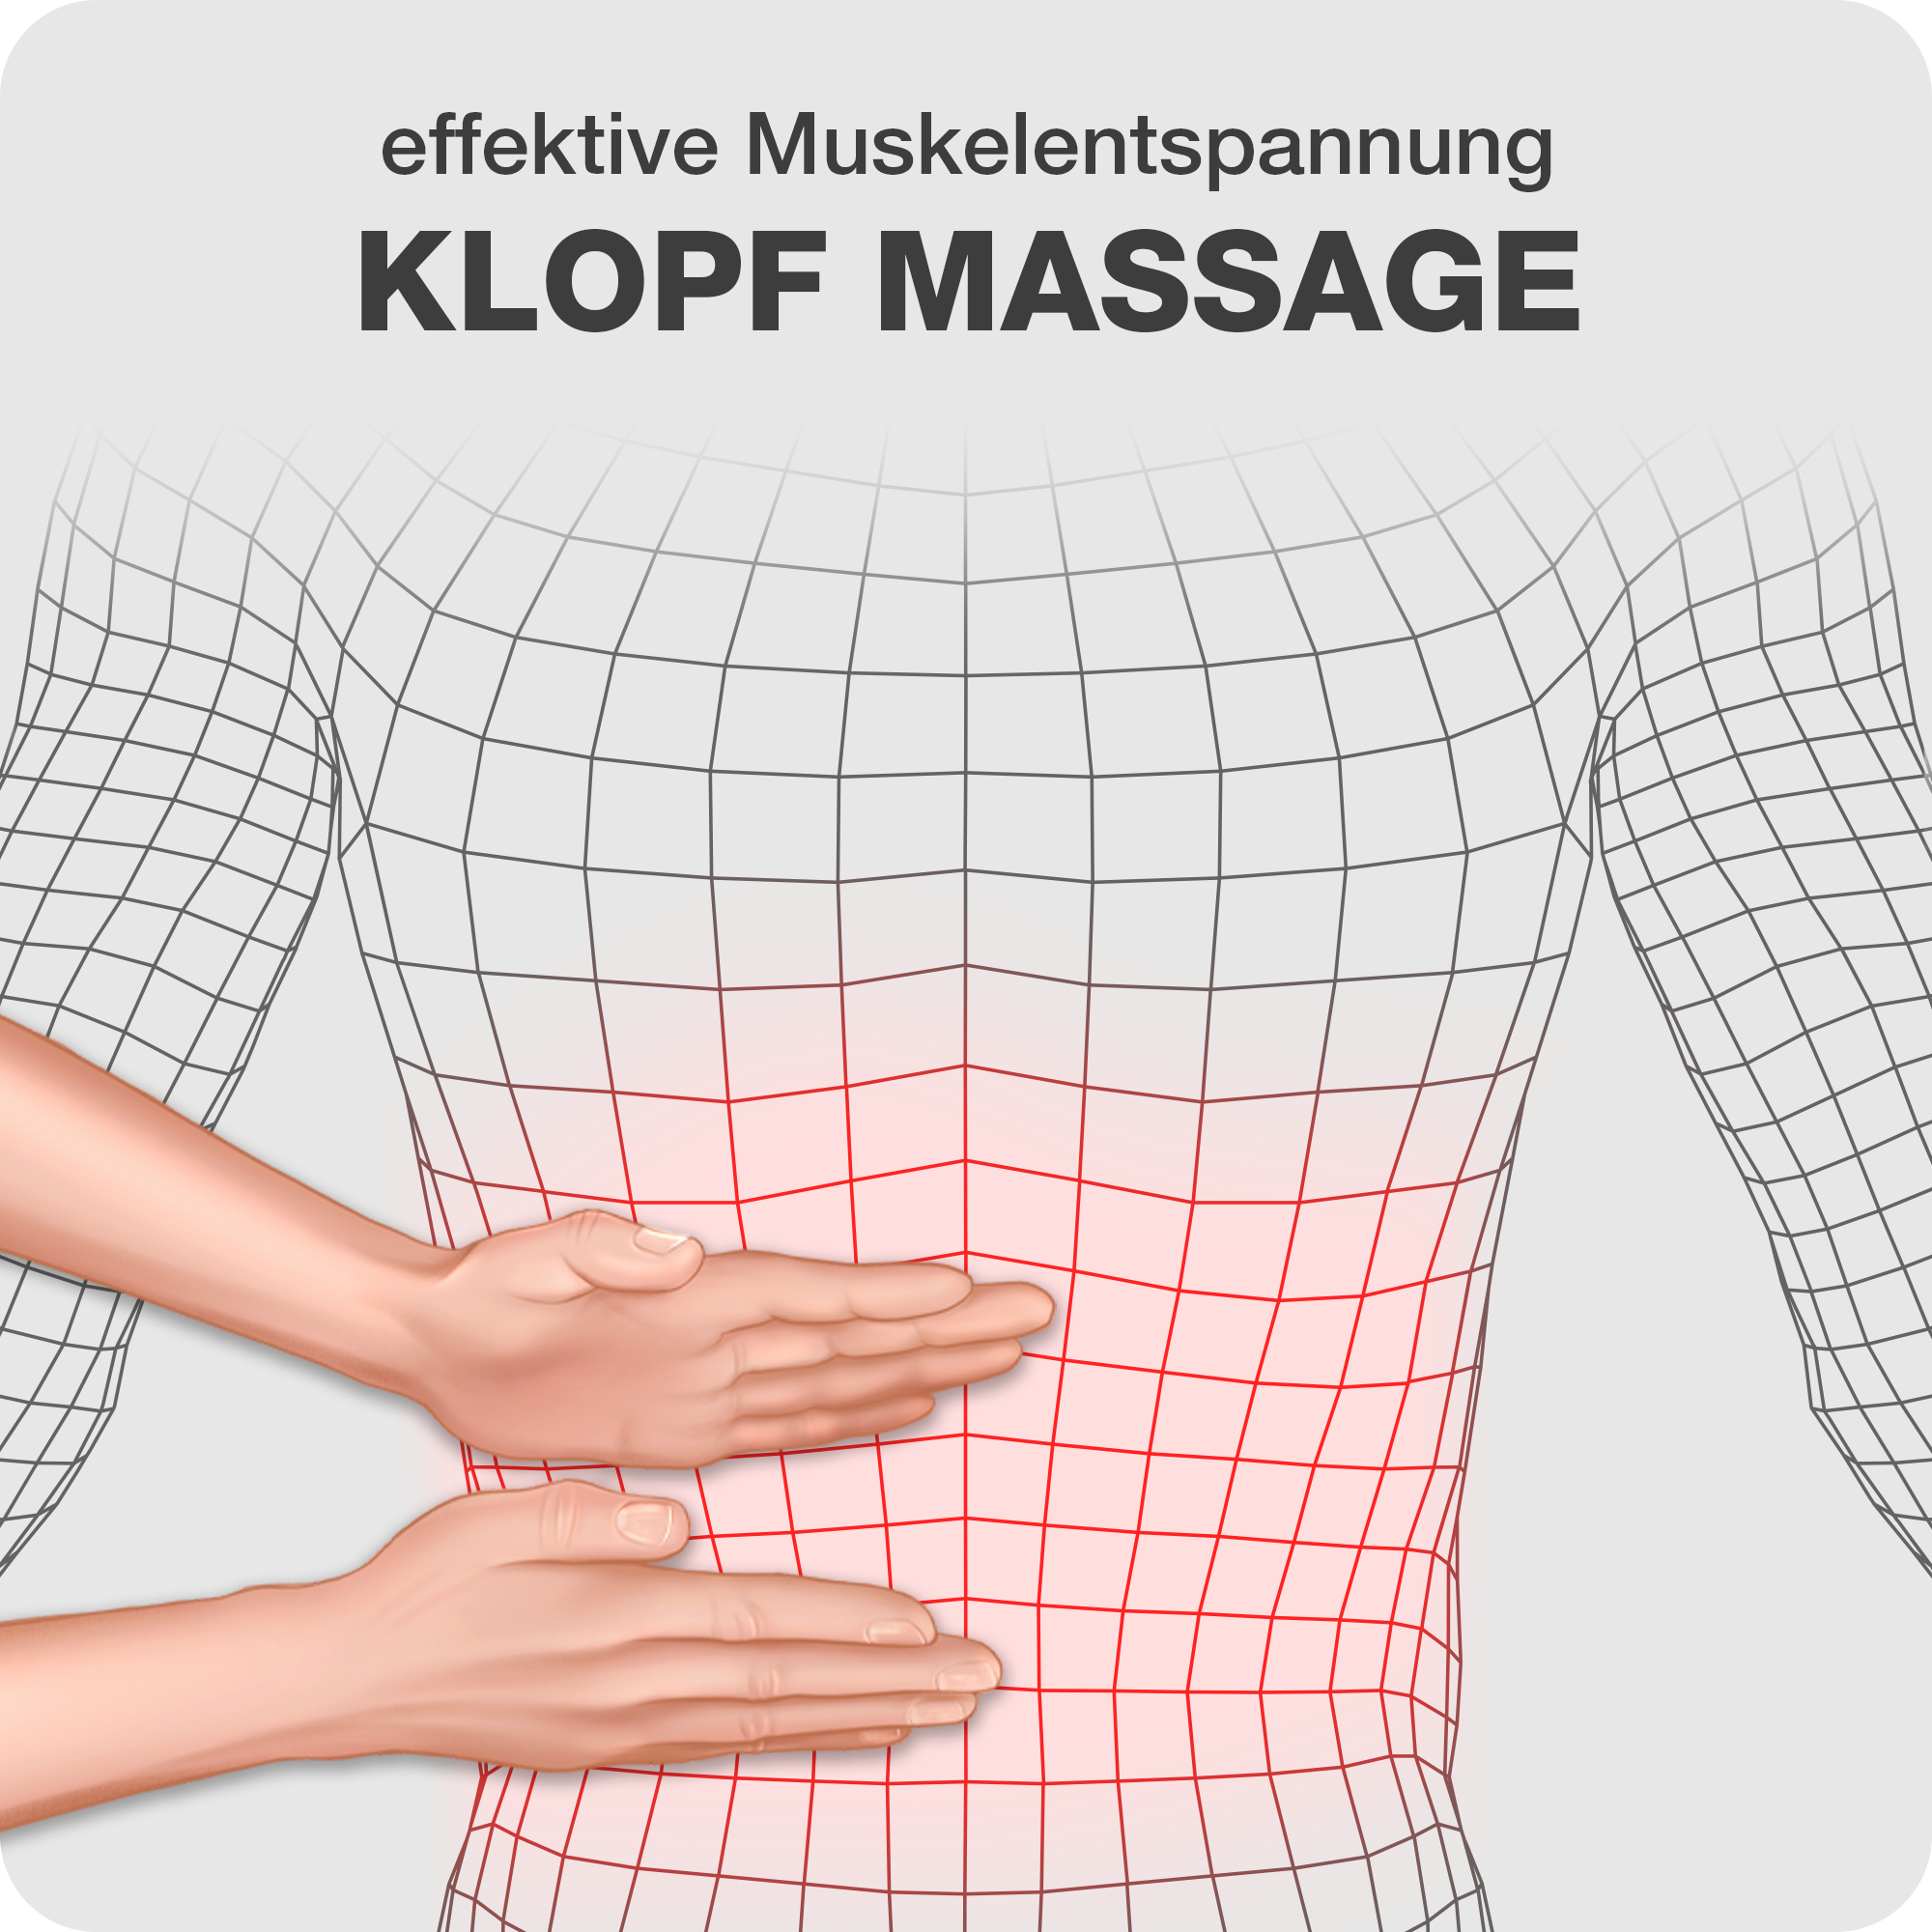 Klopfy: 2 Massage Technik: Klopf Massage